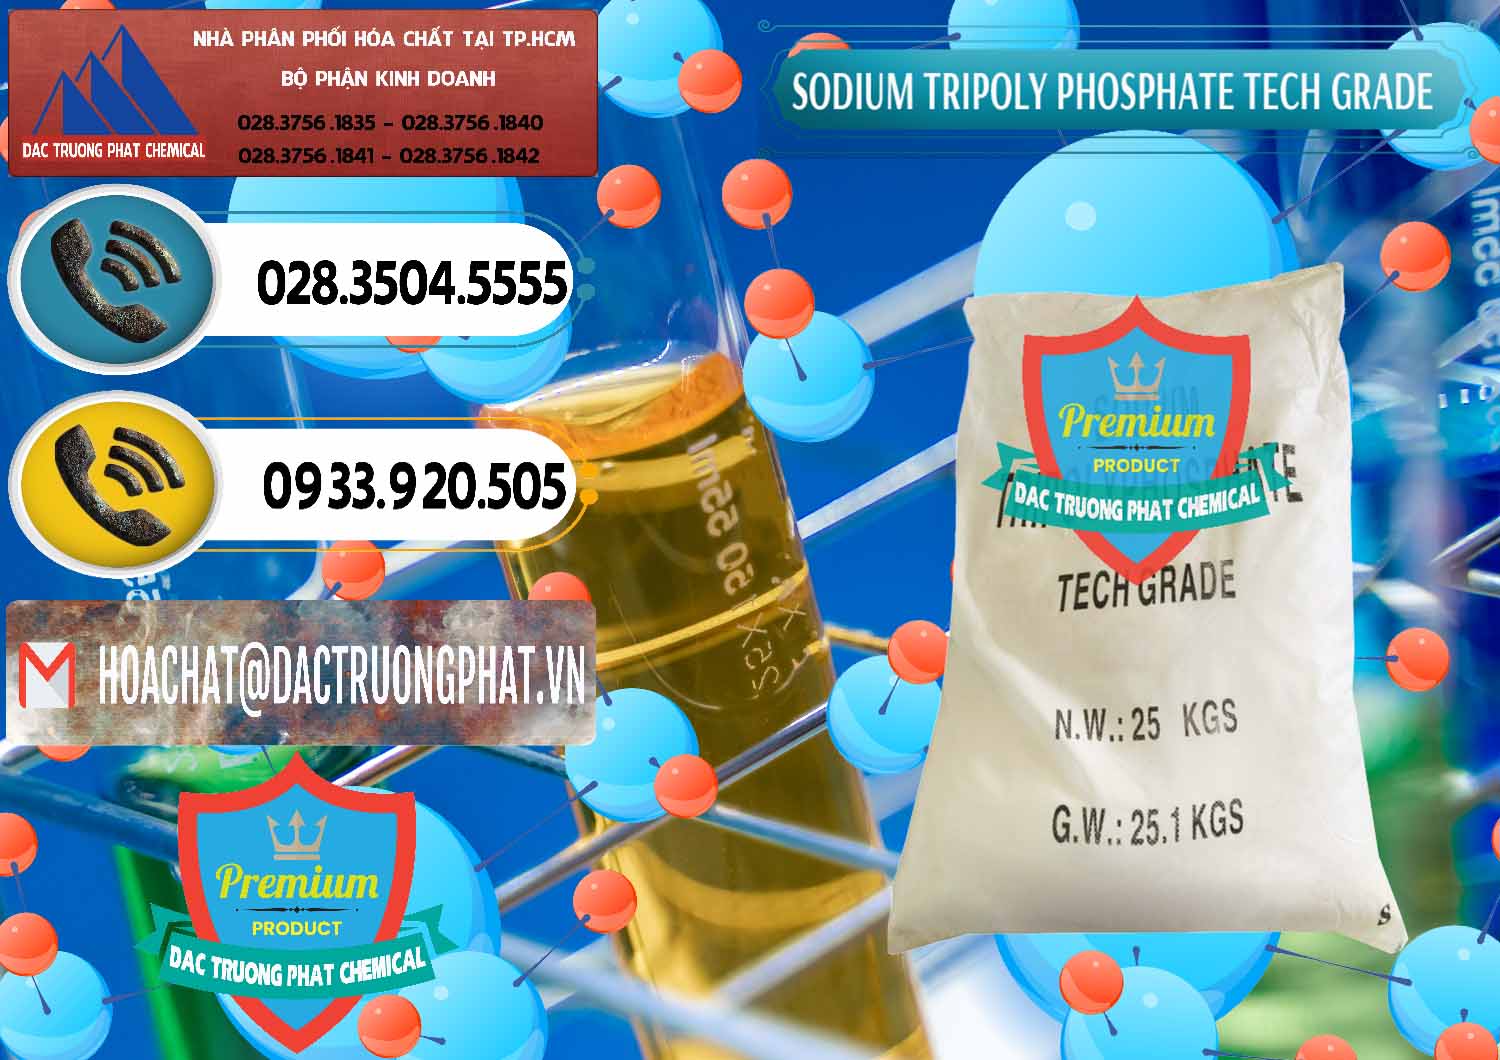 Công ty kinh doanh và bán Sodium Tripoly Phosphate - STPP Tech Grade Trung Quốc China - 0453 - Công ty chuyên cung cấp ( kinh doanh ) hóa chất tại TP.HCM - hoachatdetnhuom.vn